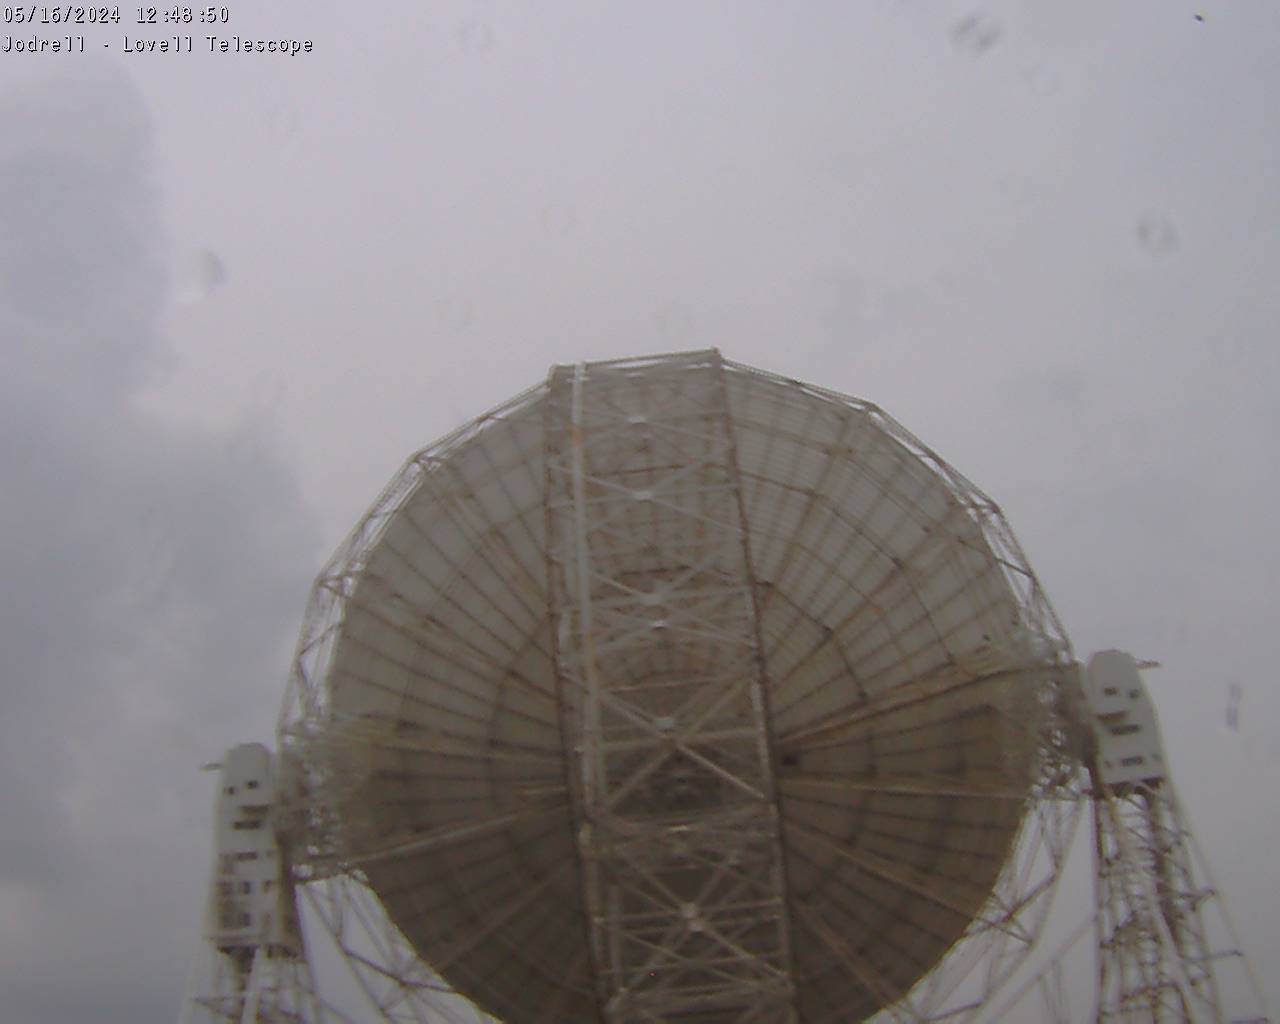 Observatorio Jodrell Bank Sáb. 12:49